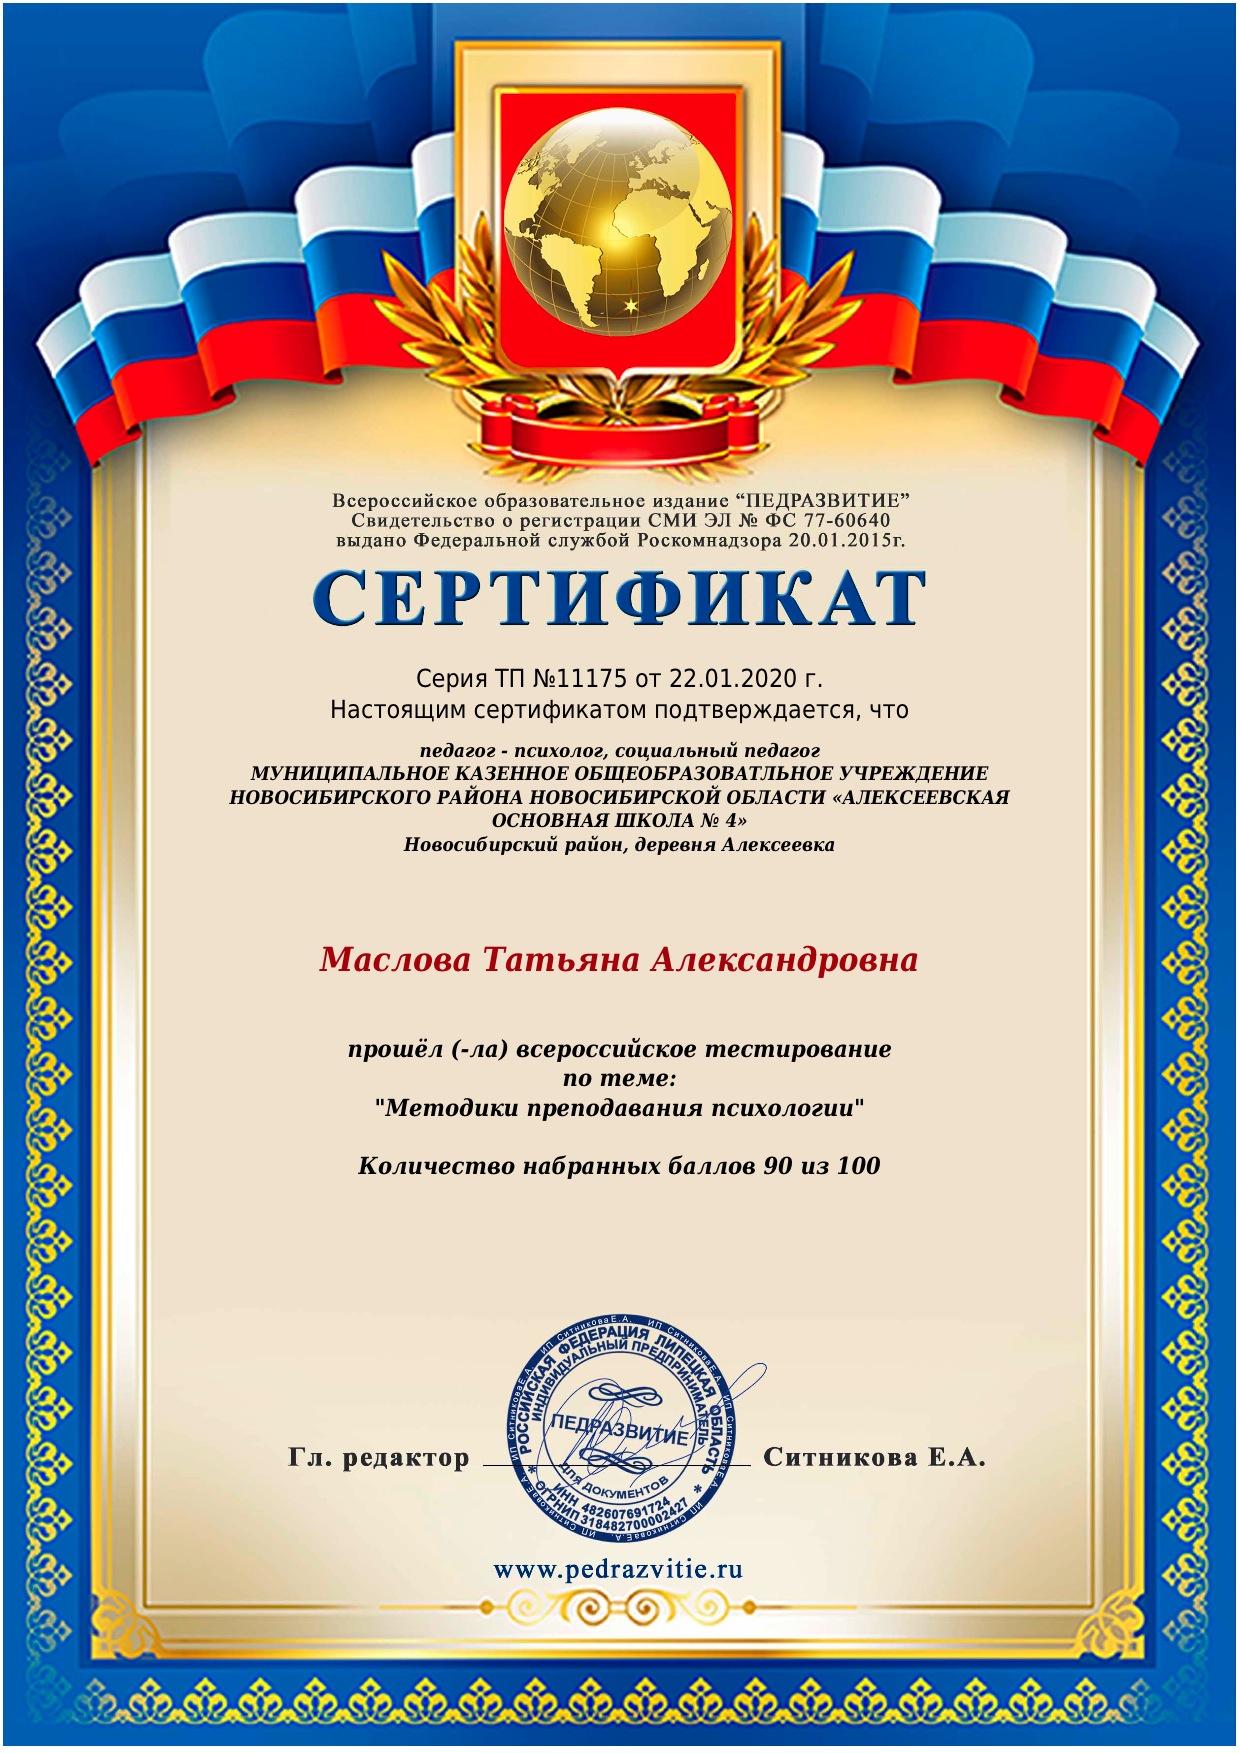 Всероссийское образовательное издание «Педразвитие», Сертификат, «Всероссийское тестирование по теме «Методики преподования психологии», 